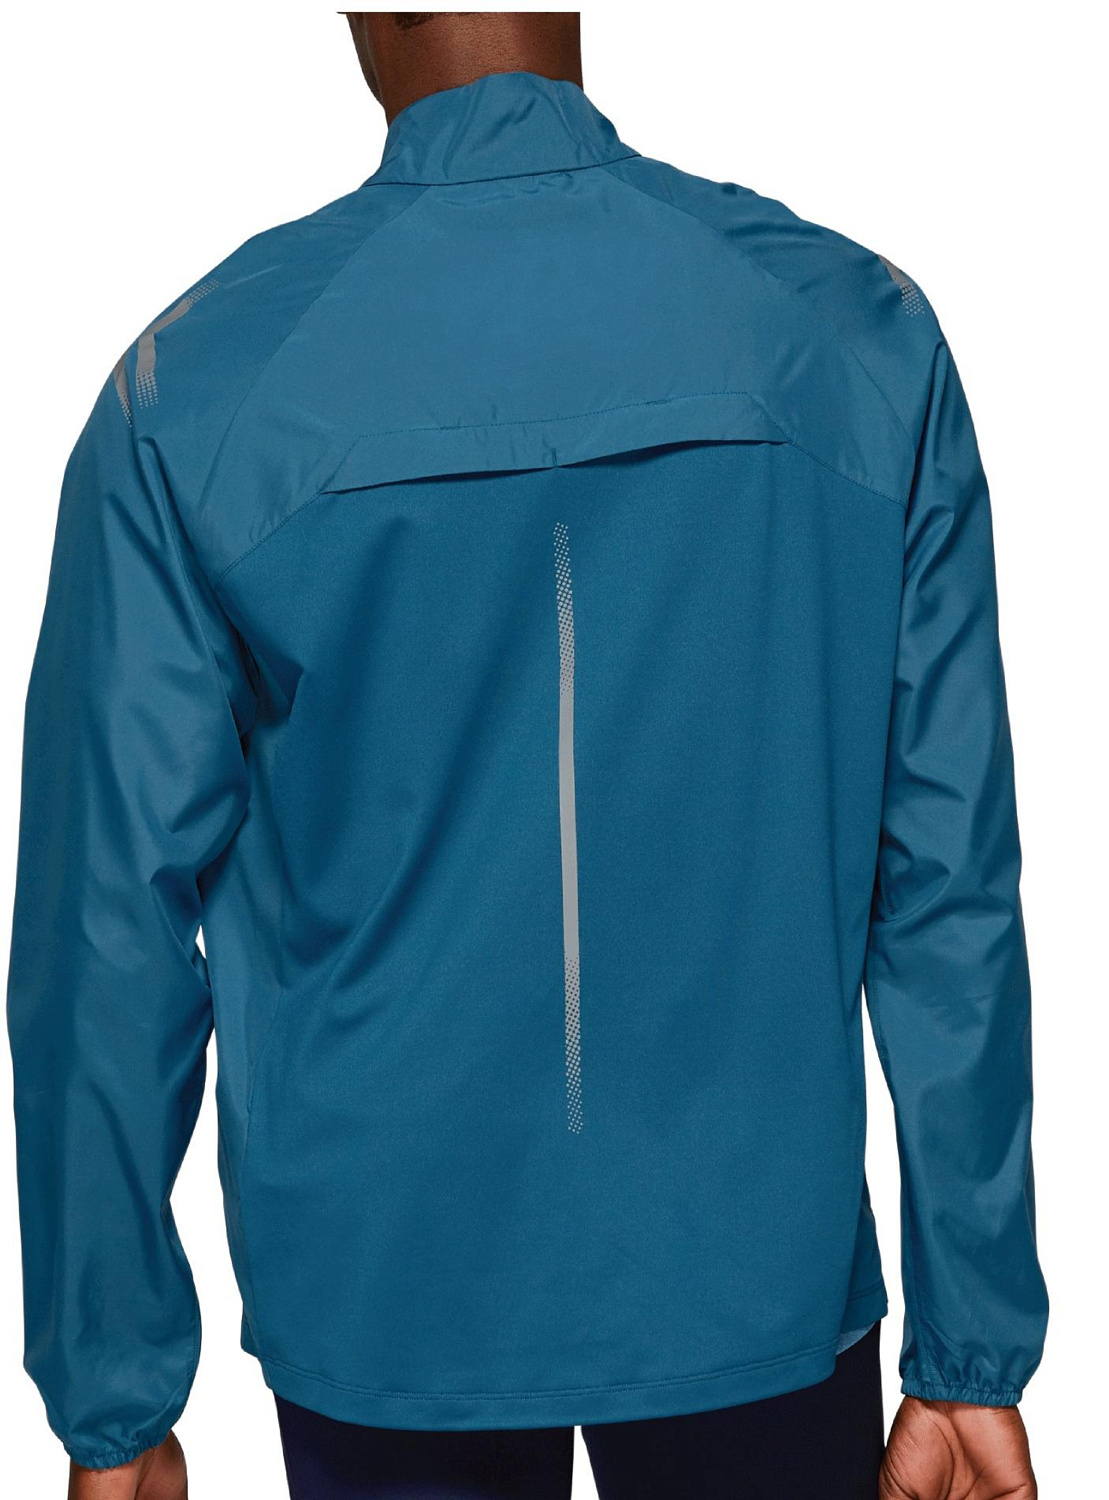 Куртка беговая Asics 2019-20 Icon Jacket Mako Blue